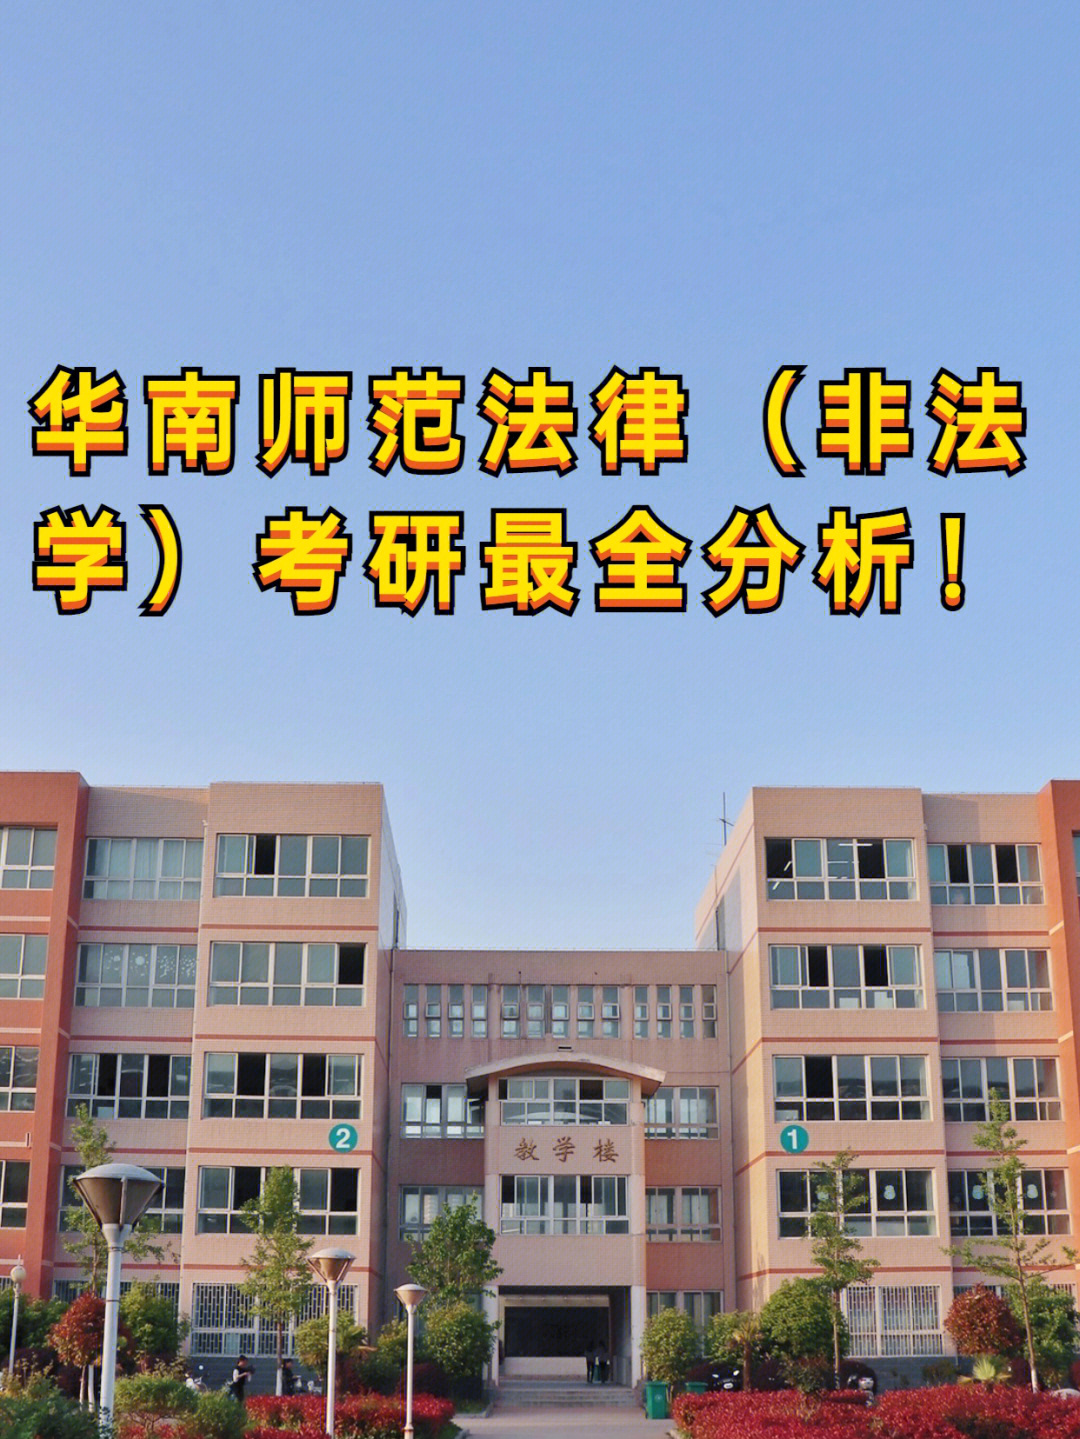 211院校:华南师范大学的法律(非法学)专业考研分析97有近3年报录比